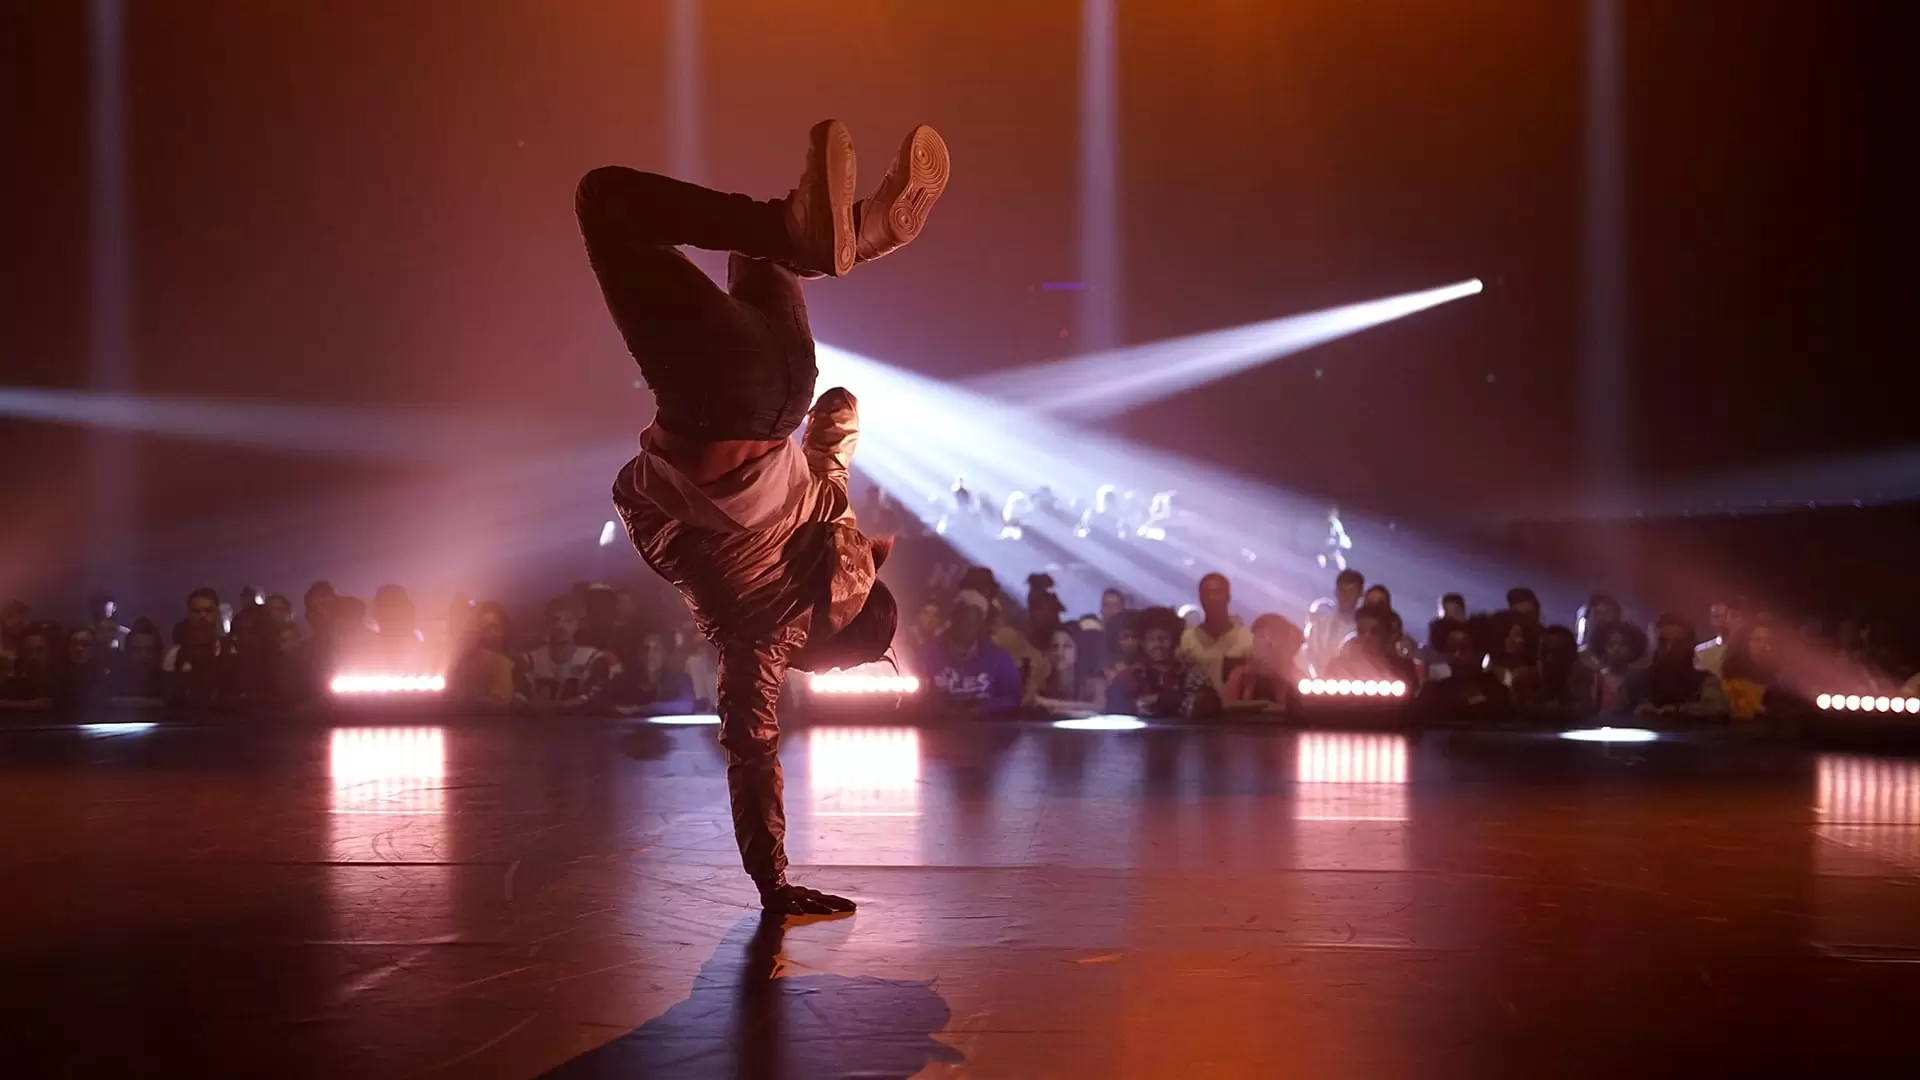 دانلود فیلم Let’s Dance 2019 (بیا برقصیم) با زیرنویس فارسی و تماشای آنلاین